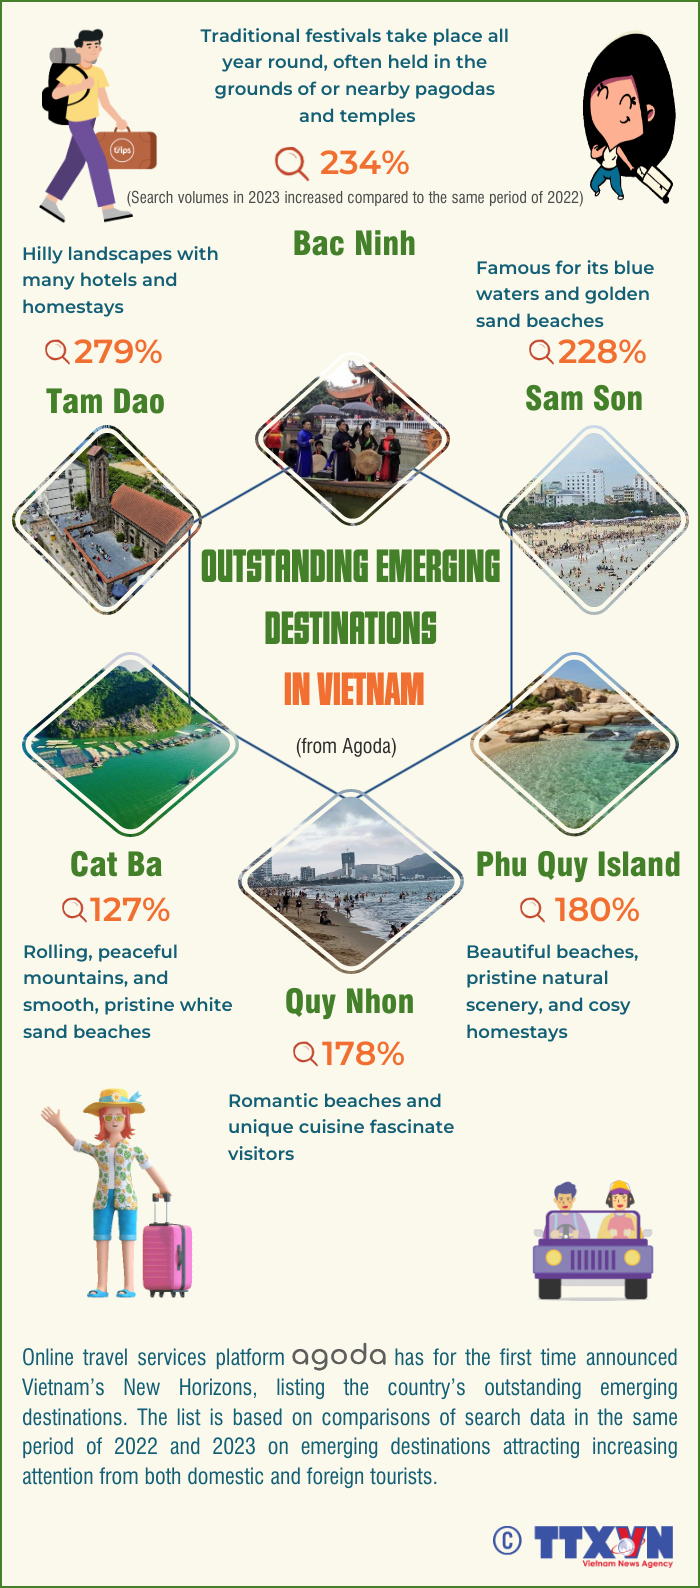 Outstanding emerging destinations in Vietnam